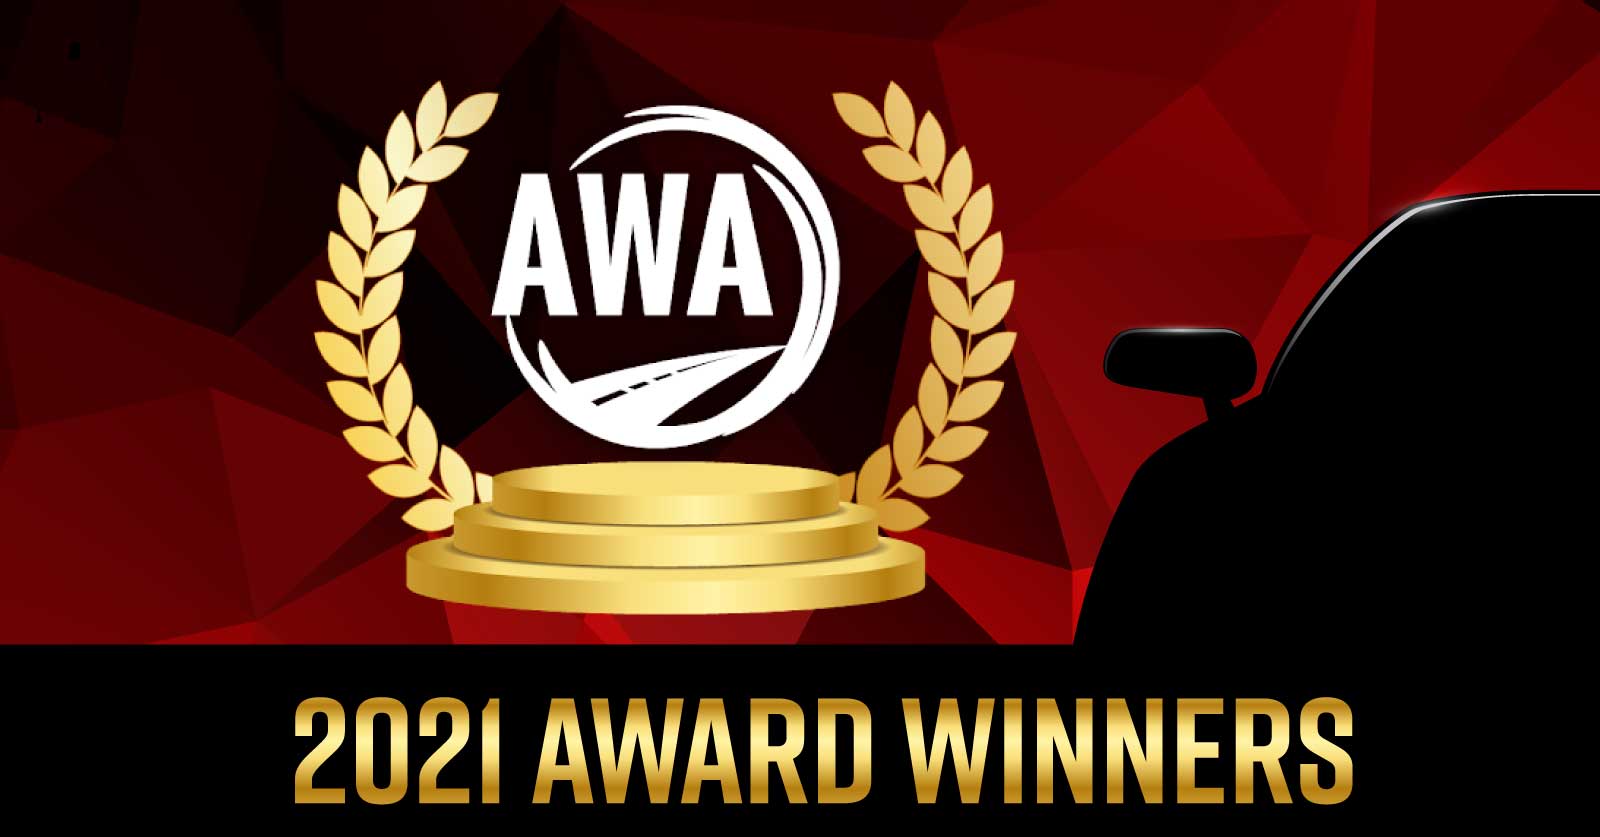 AWA Winners 2021